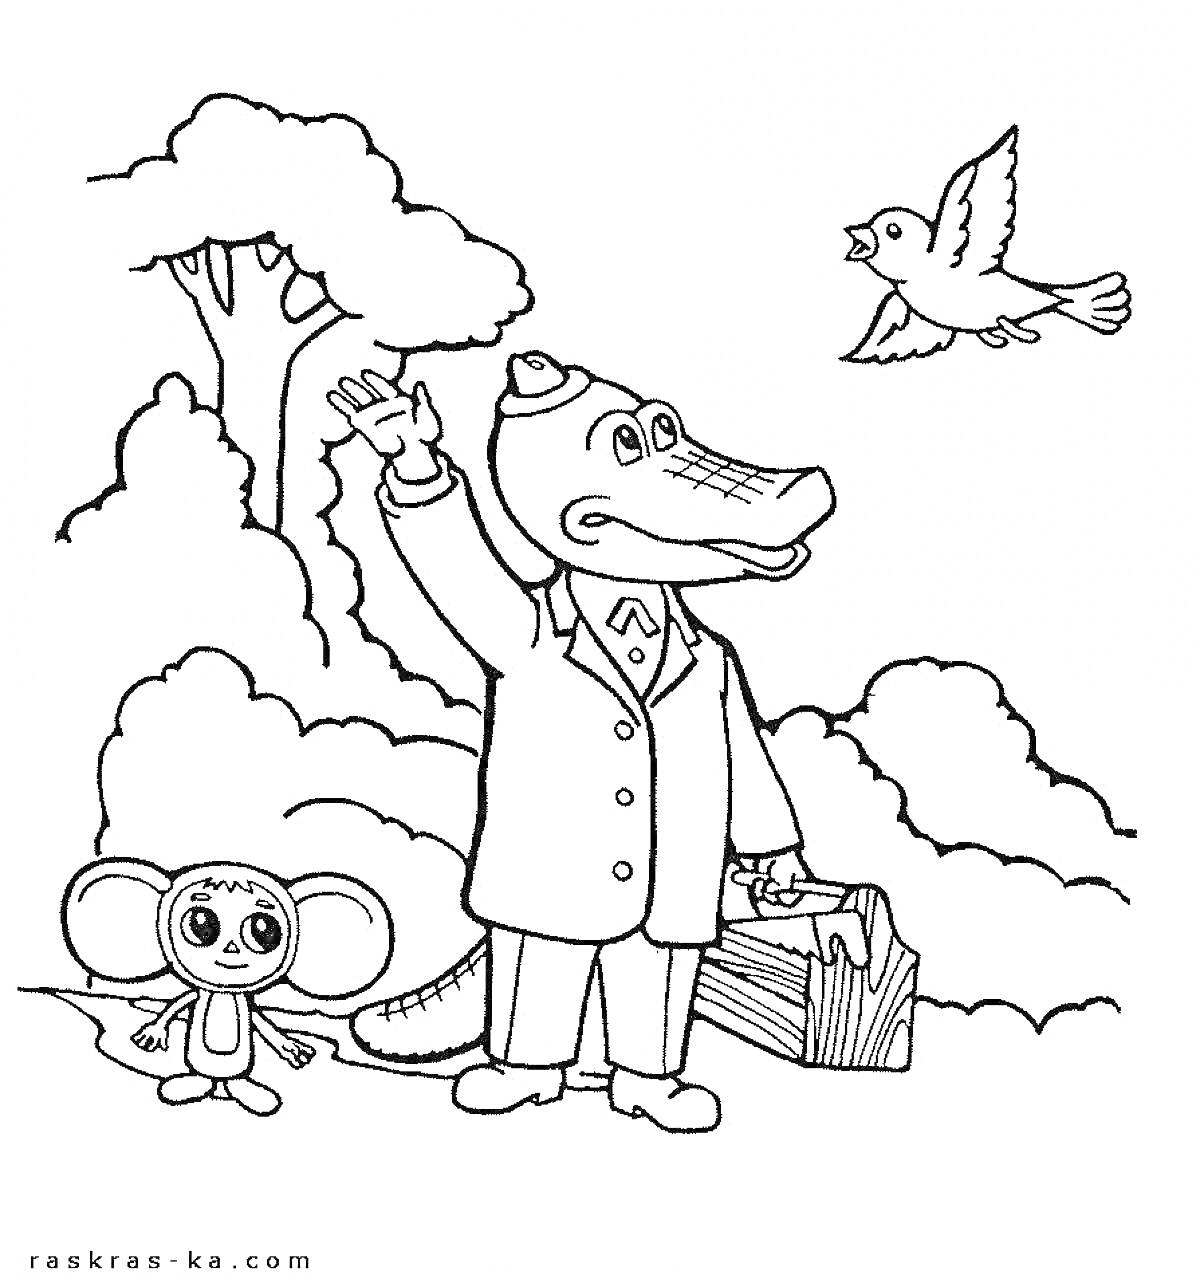 Раскраска Крокодил Гена с чемоданом и Чебурашка под деревом, крокодил машет рукой летящей птице